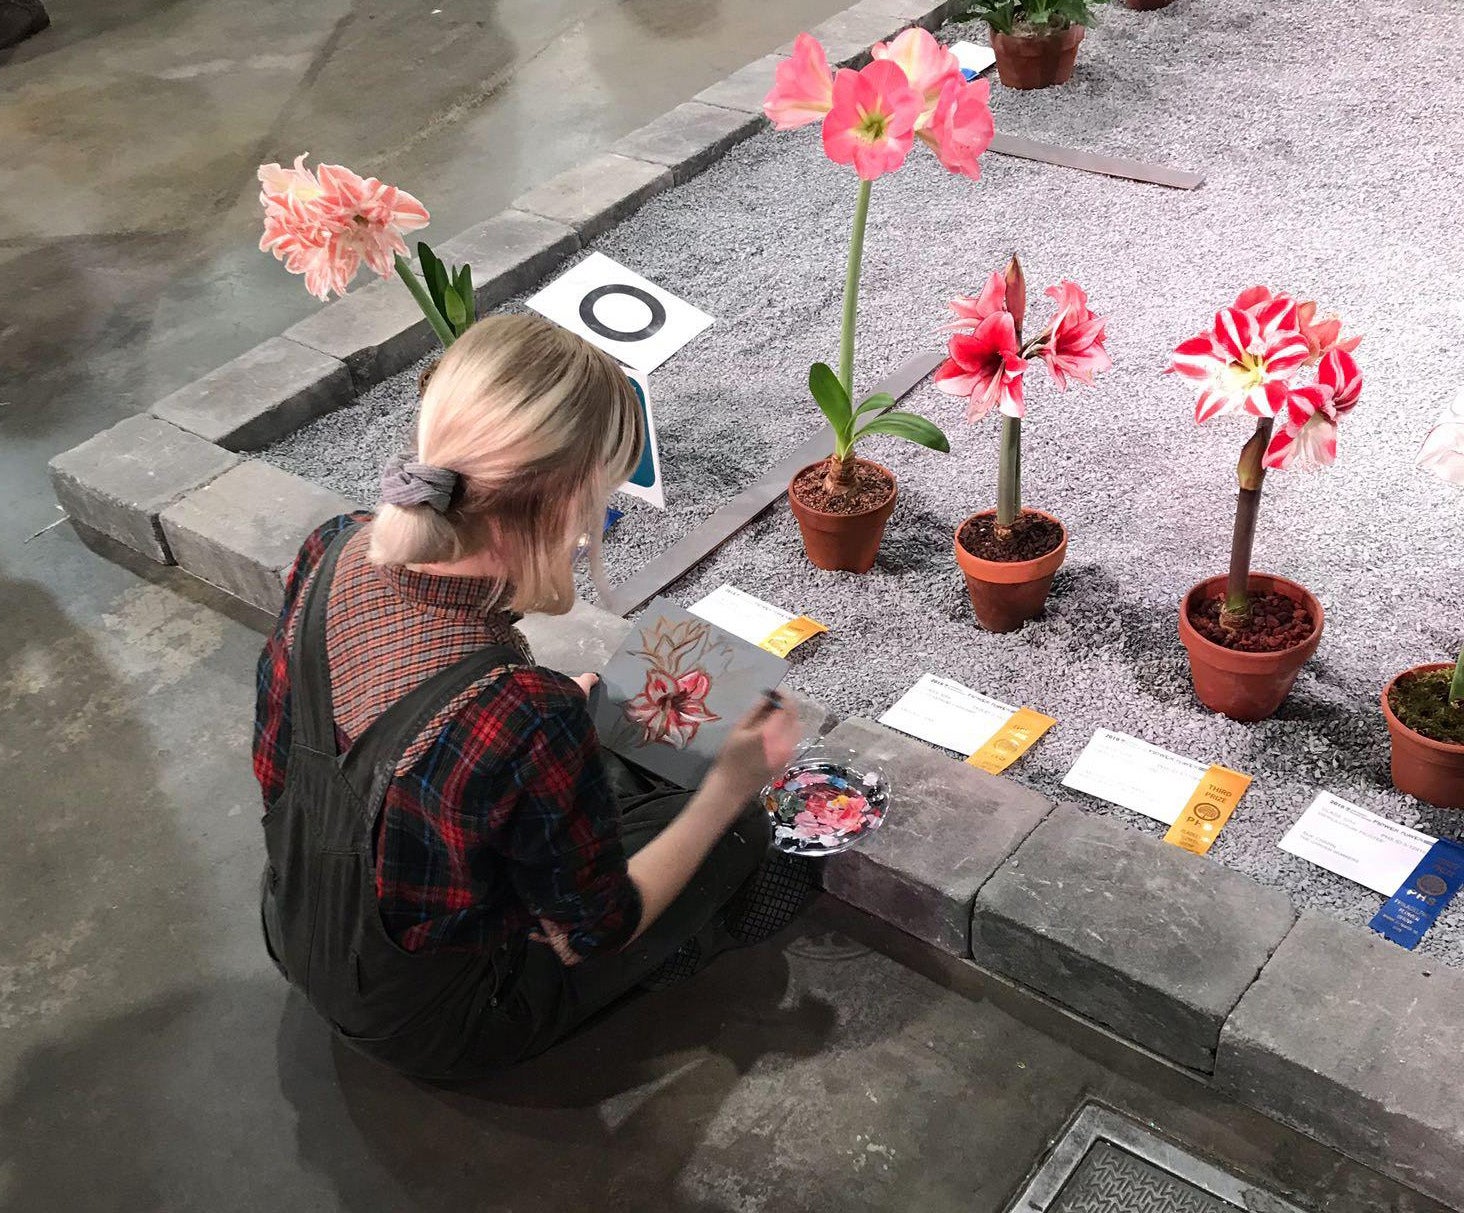 Artist and Garden Edging at Philadelphia Flower Show